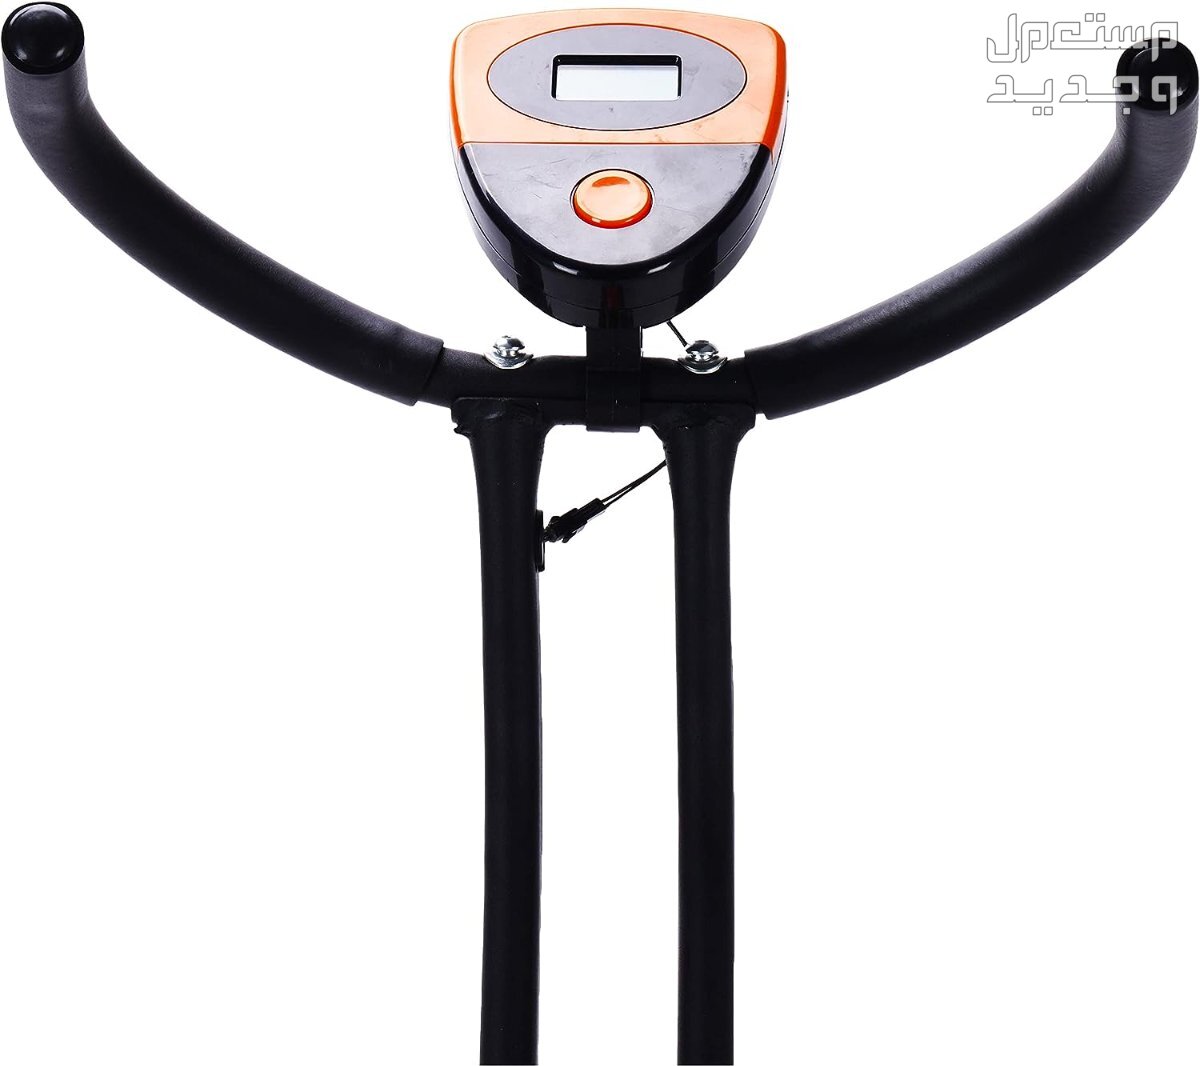 ارخص اجهزة رياضية مستعملة بالمواصفات والصور والاسعار في جيبوتي جهاز ‎دراجة كارديو ‎بودي بيلدر موديل ‎38-1112-Orange